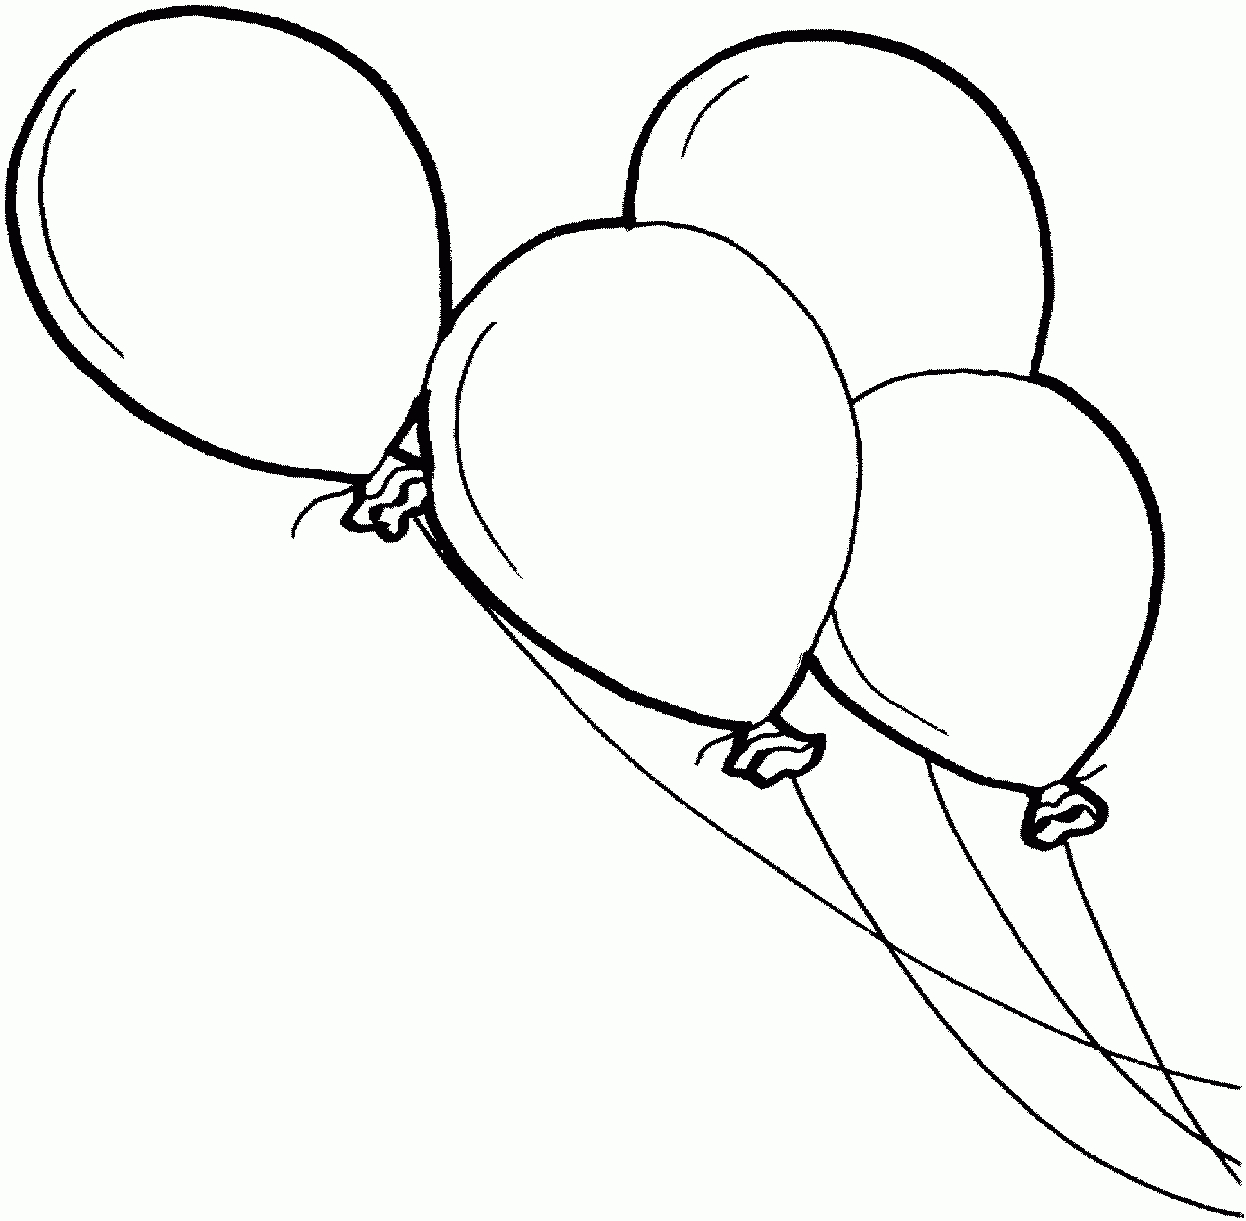 Luftballons 2 Ausmalbild &amp; Malvorlage (Kinder) verwandt mit Luftballon Malvorlage